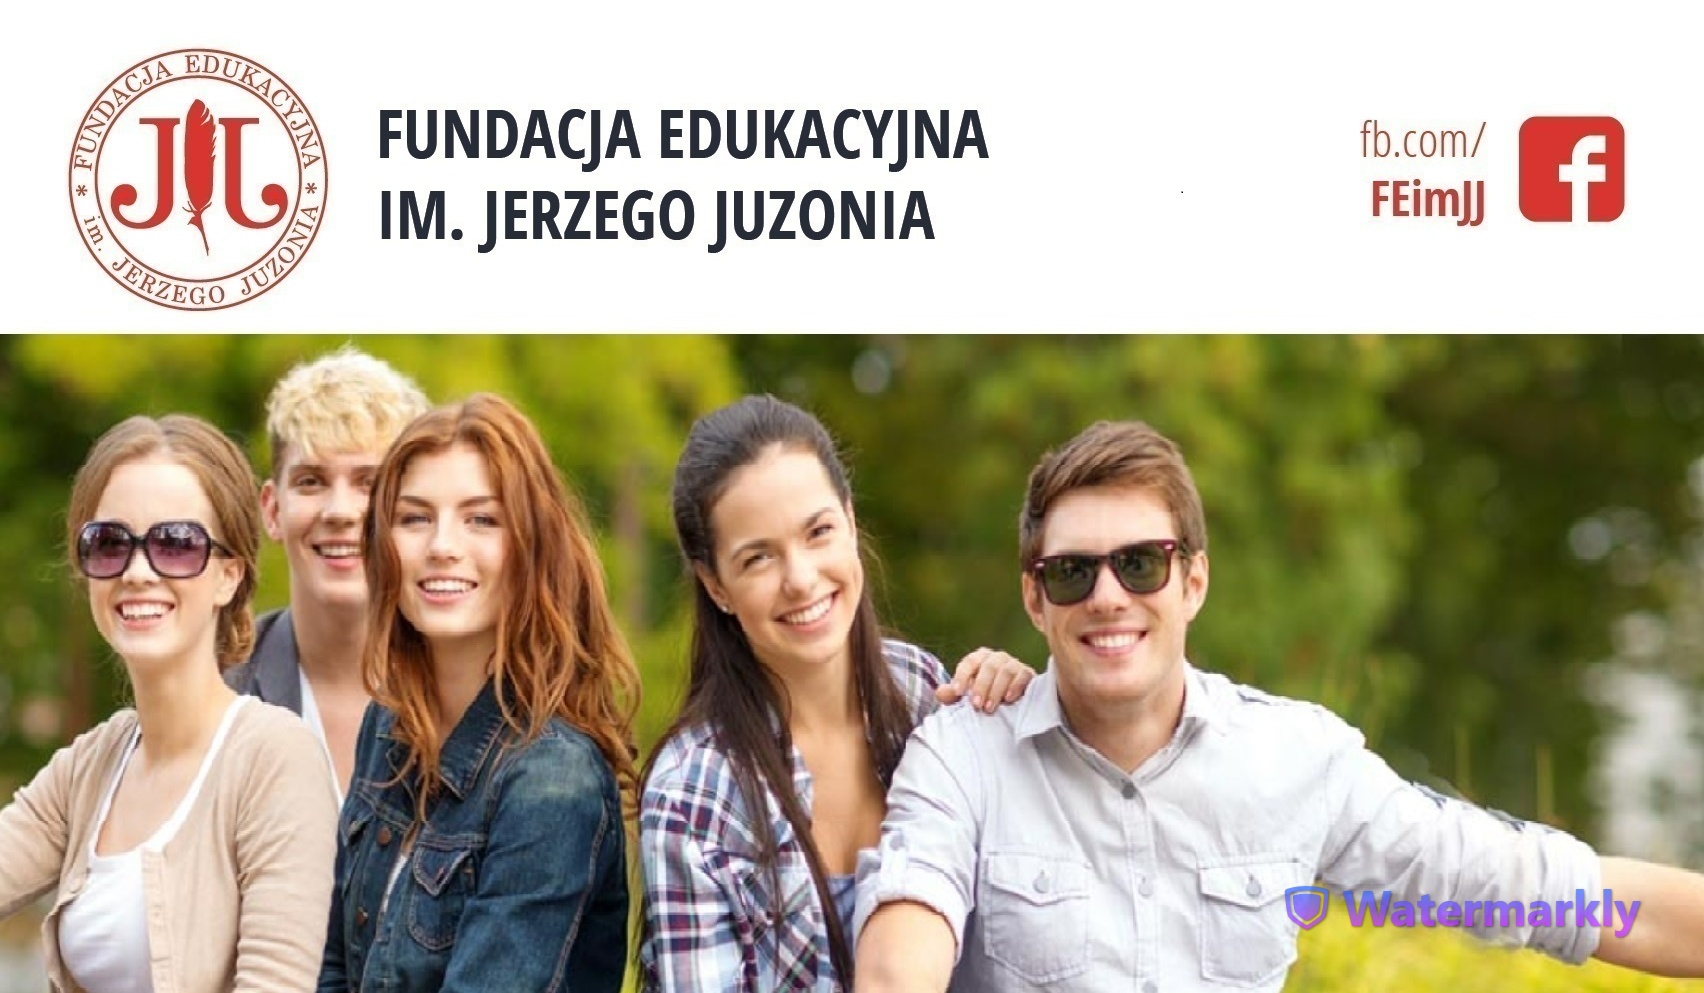 Stypendia Fundacji Edukacyjnej im. Jerzego Juzonia dla studentów pierwszego roku